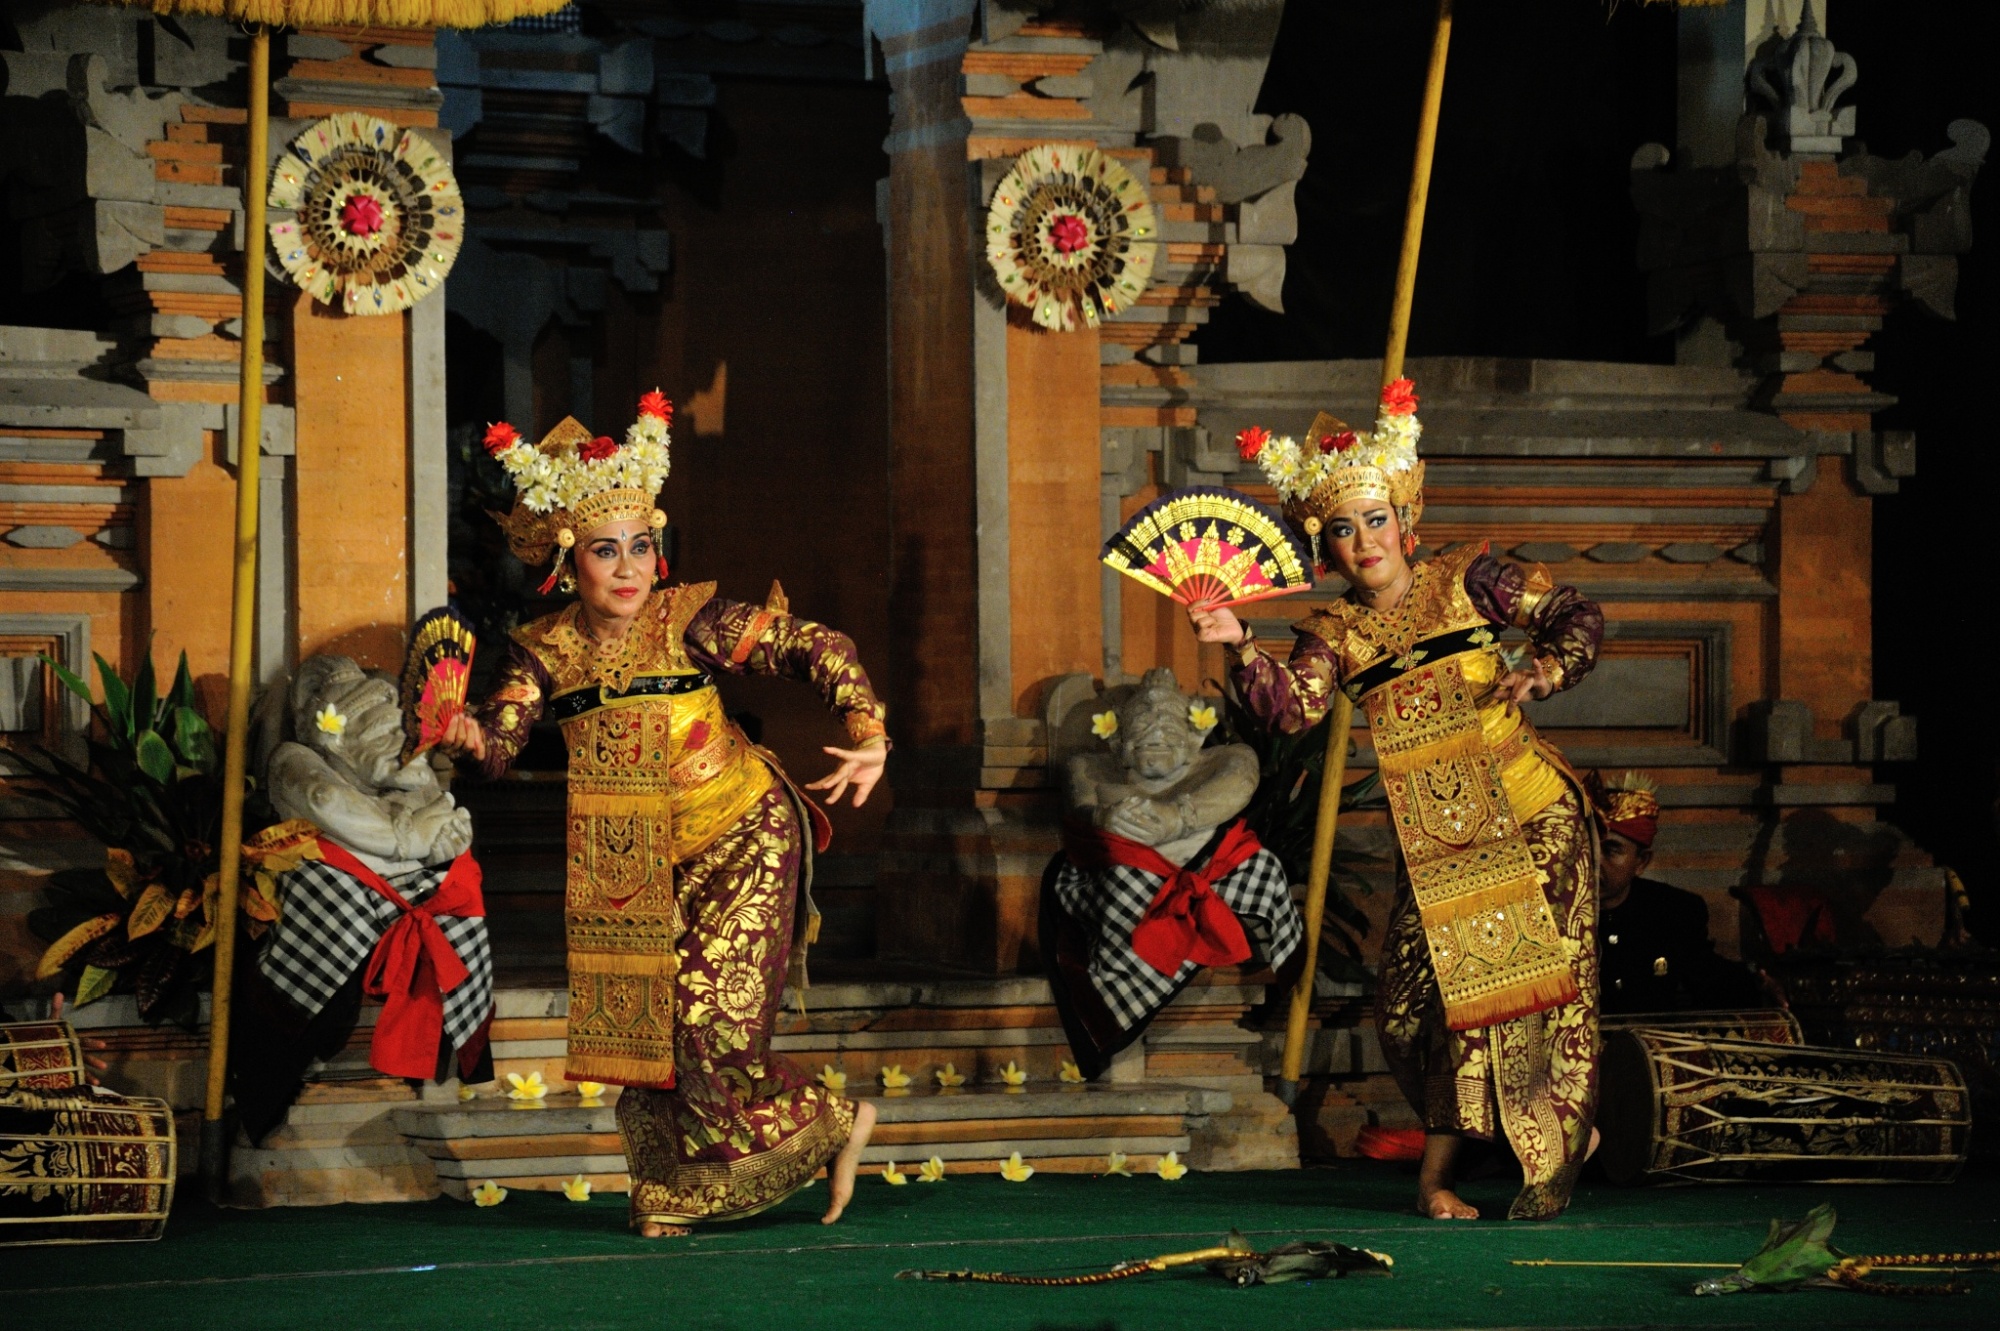 バリ島の伝統舞踊「レゴンダンス」や「バロンダンス」は伝統音楽であるガムランの音色に合わせて披露される。